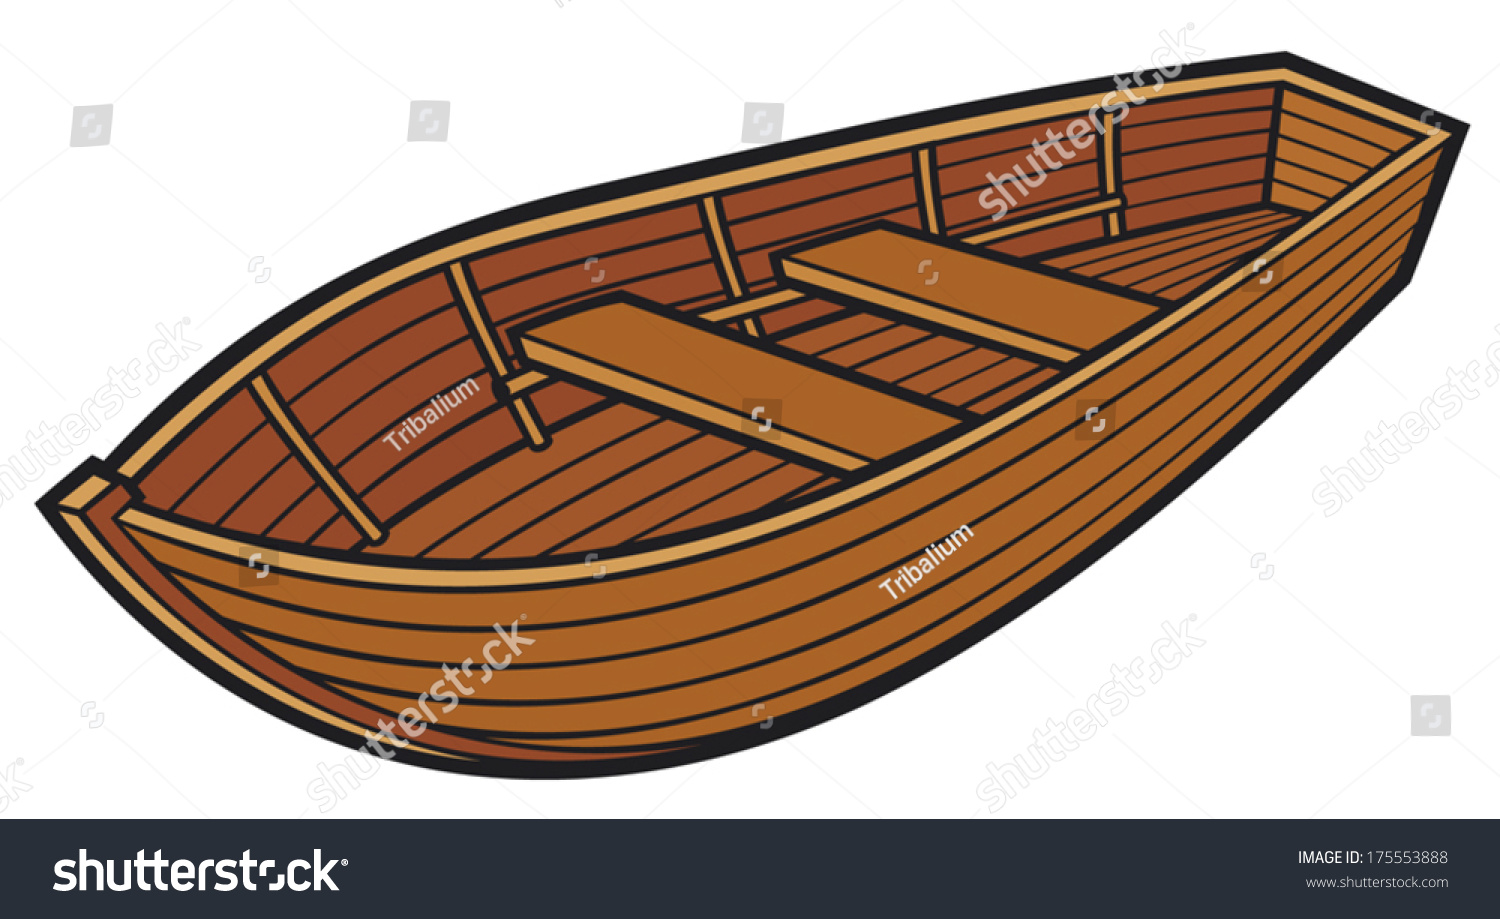 Wooden Boat Stock Vector 175553888 - Shutterstock